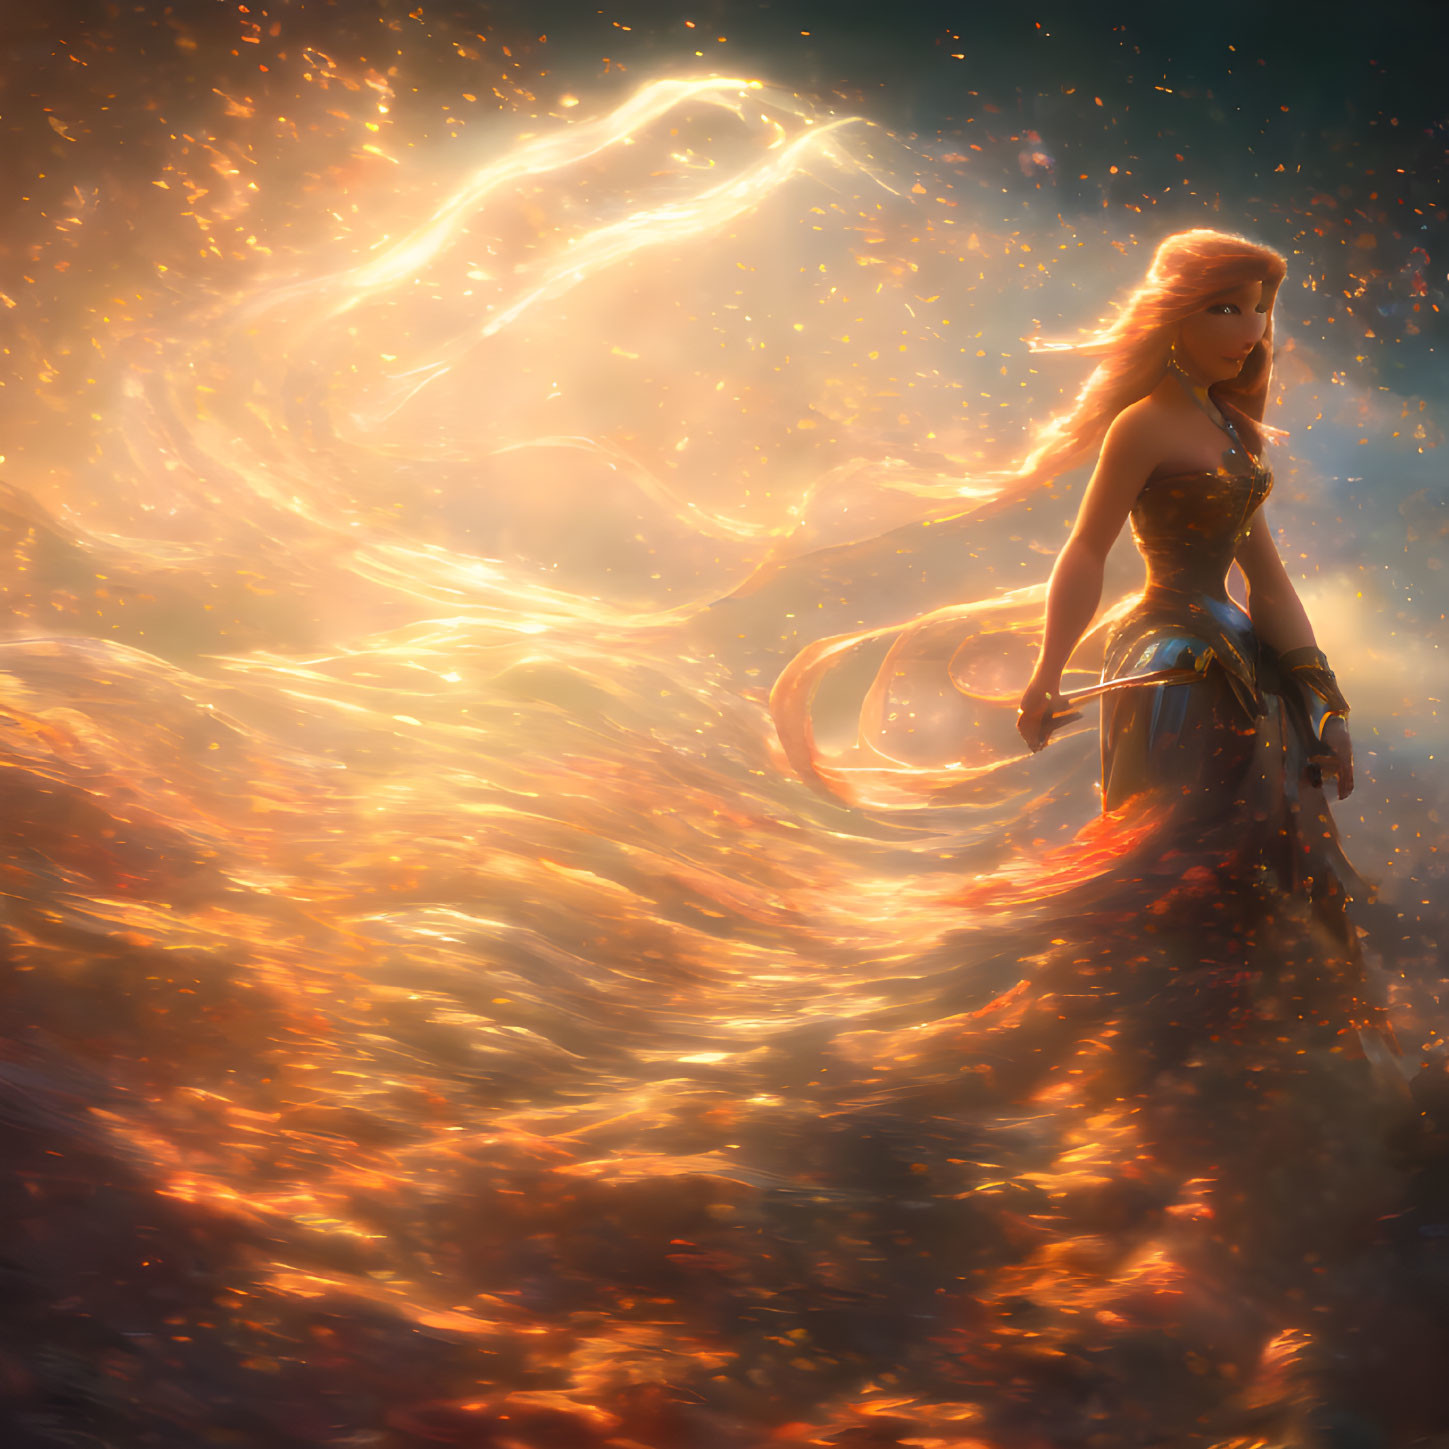 Blond-haired warrior woman in fiery phoenix swirls